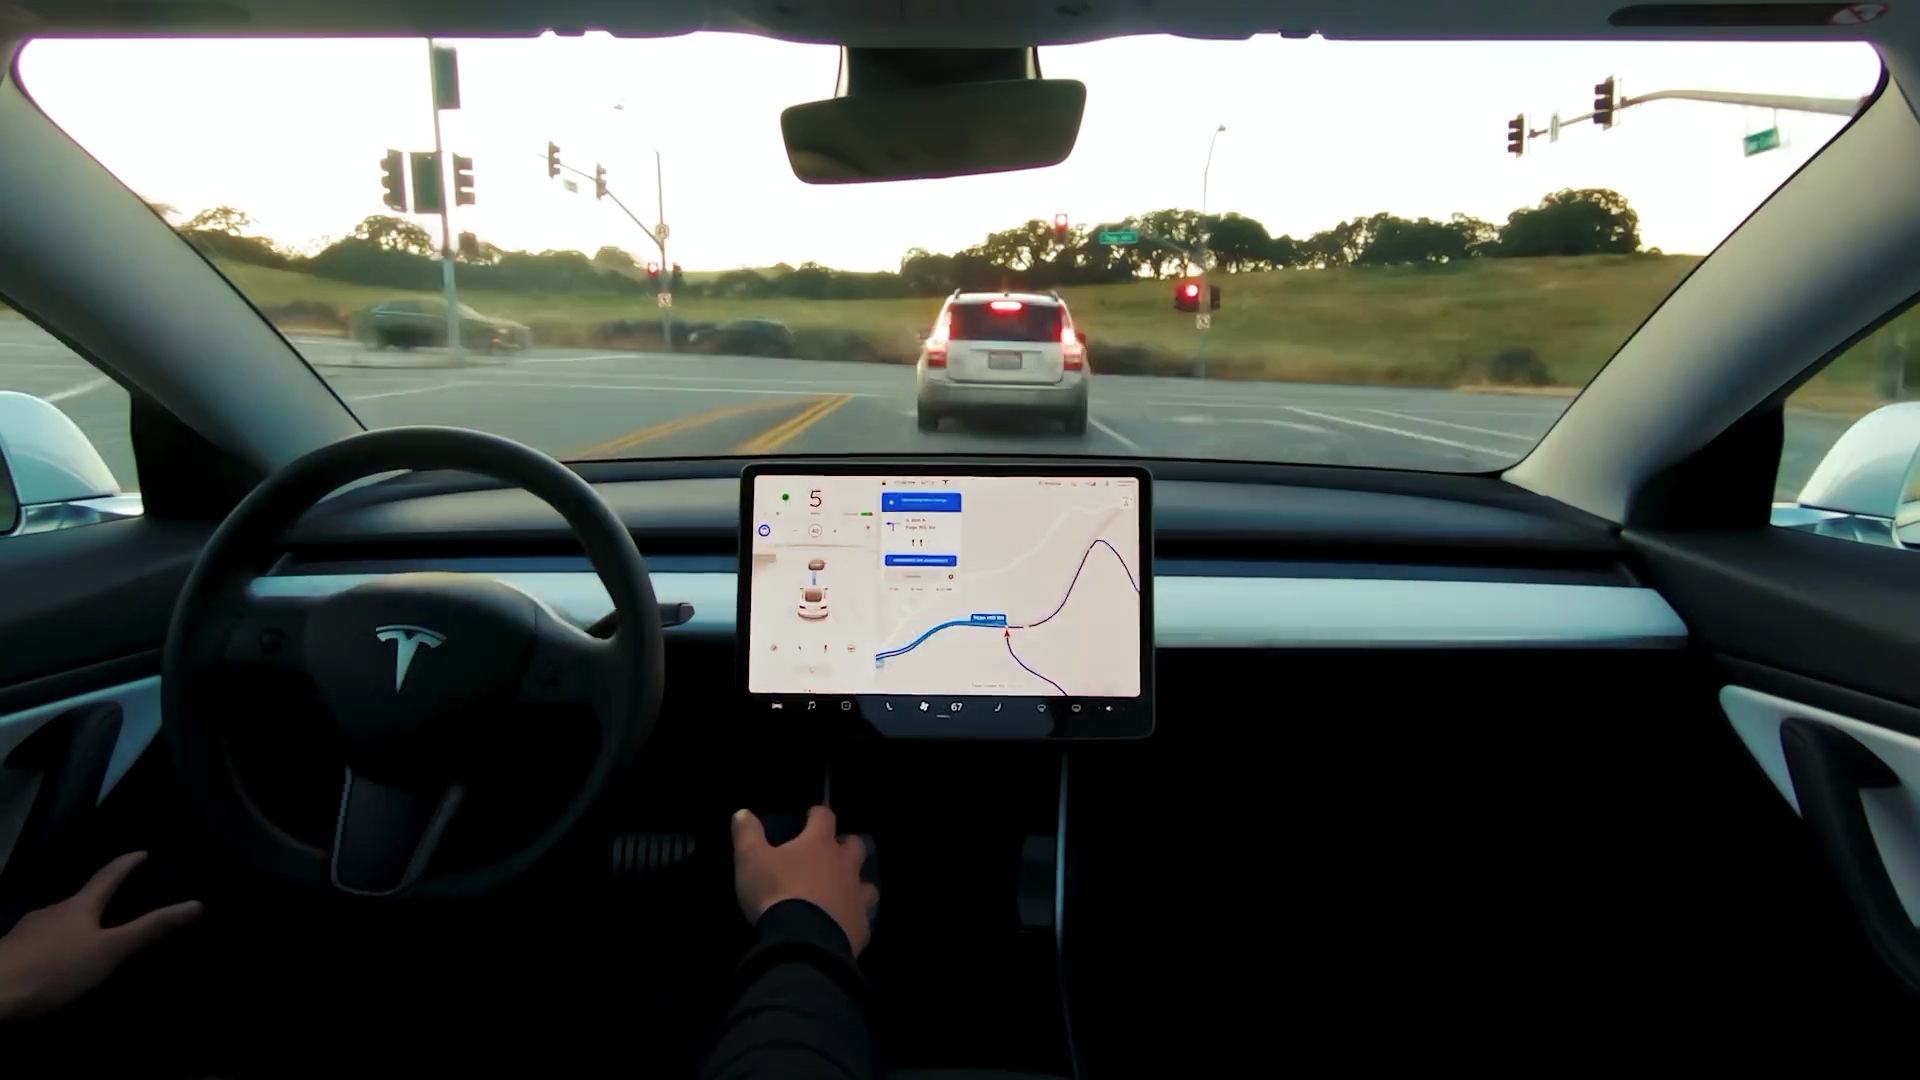 ยังไงกัน!! วิศวกร Tesla ยอมรับคลิปโชว์ Autopilot ปี 2016 นั้น “จัดฉาก” ตามคำสั่ง Elon Musk